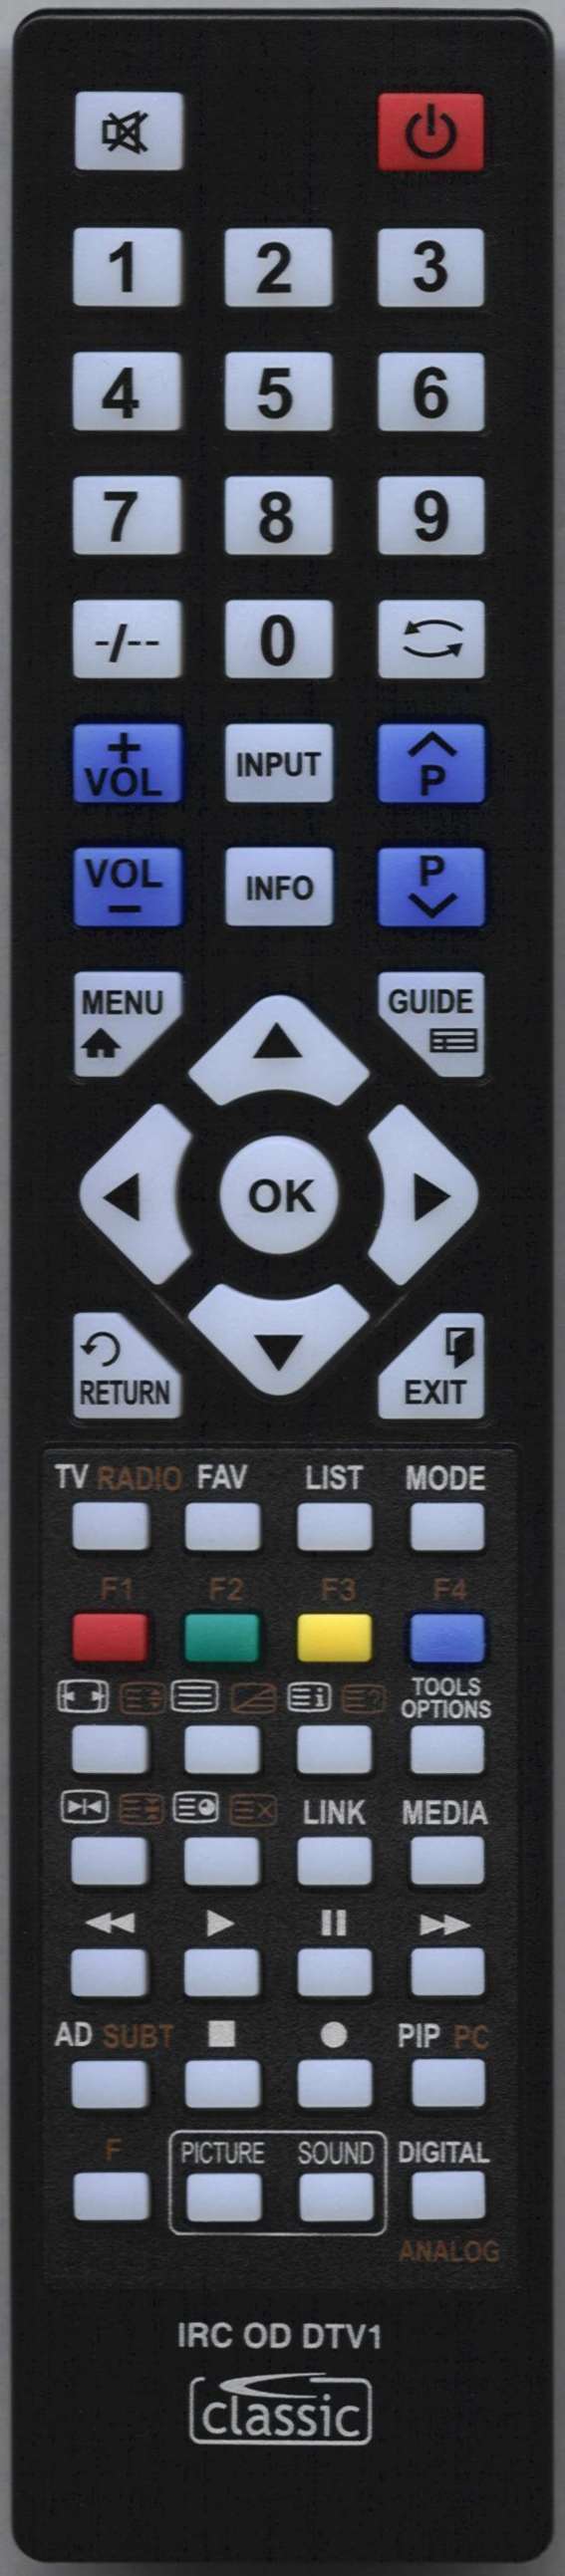 MATSUI TVR180 Remote Control Alternative